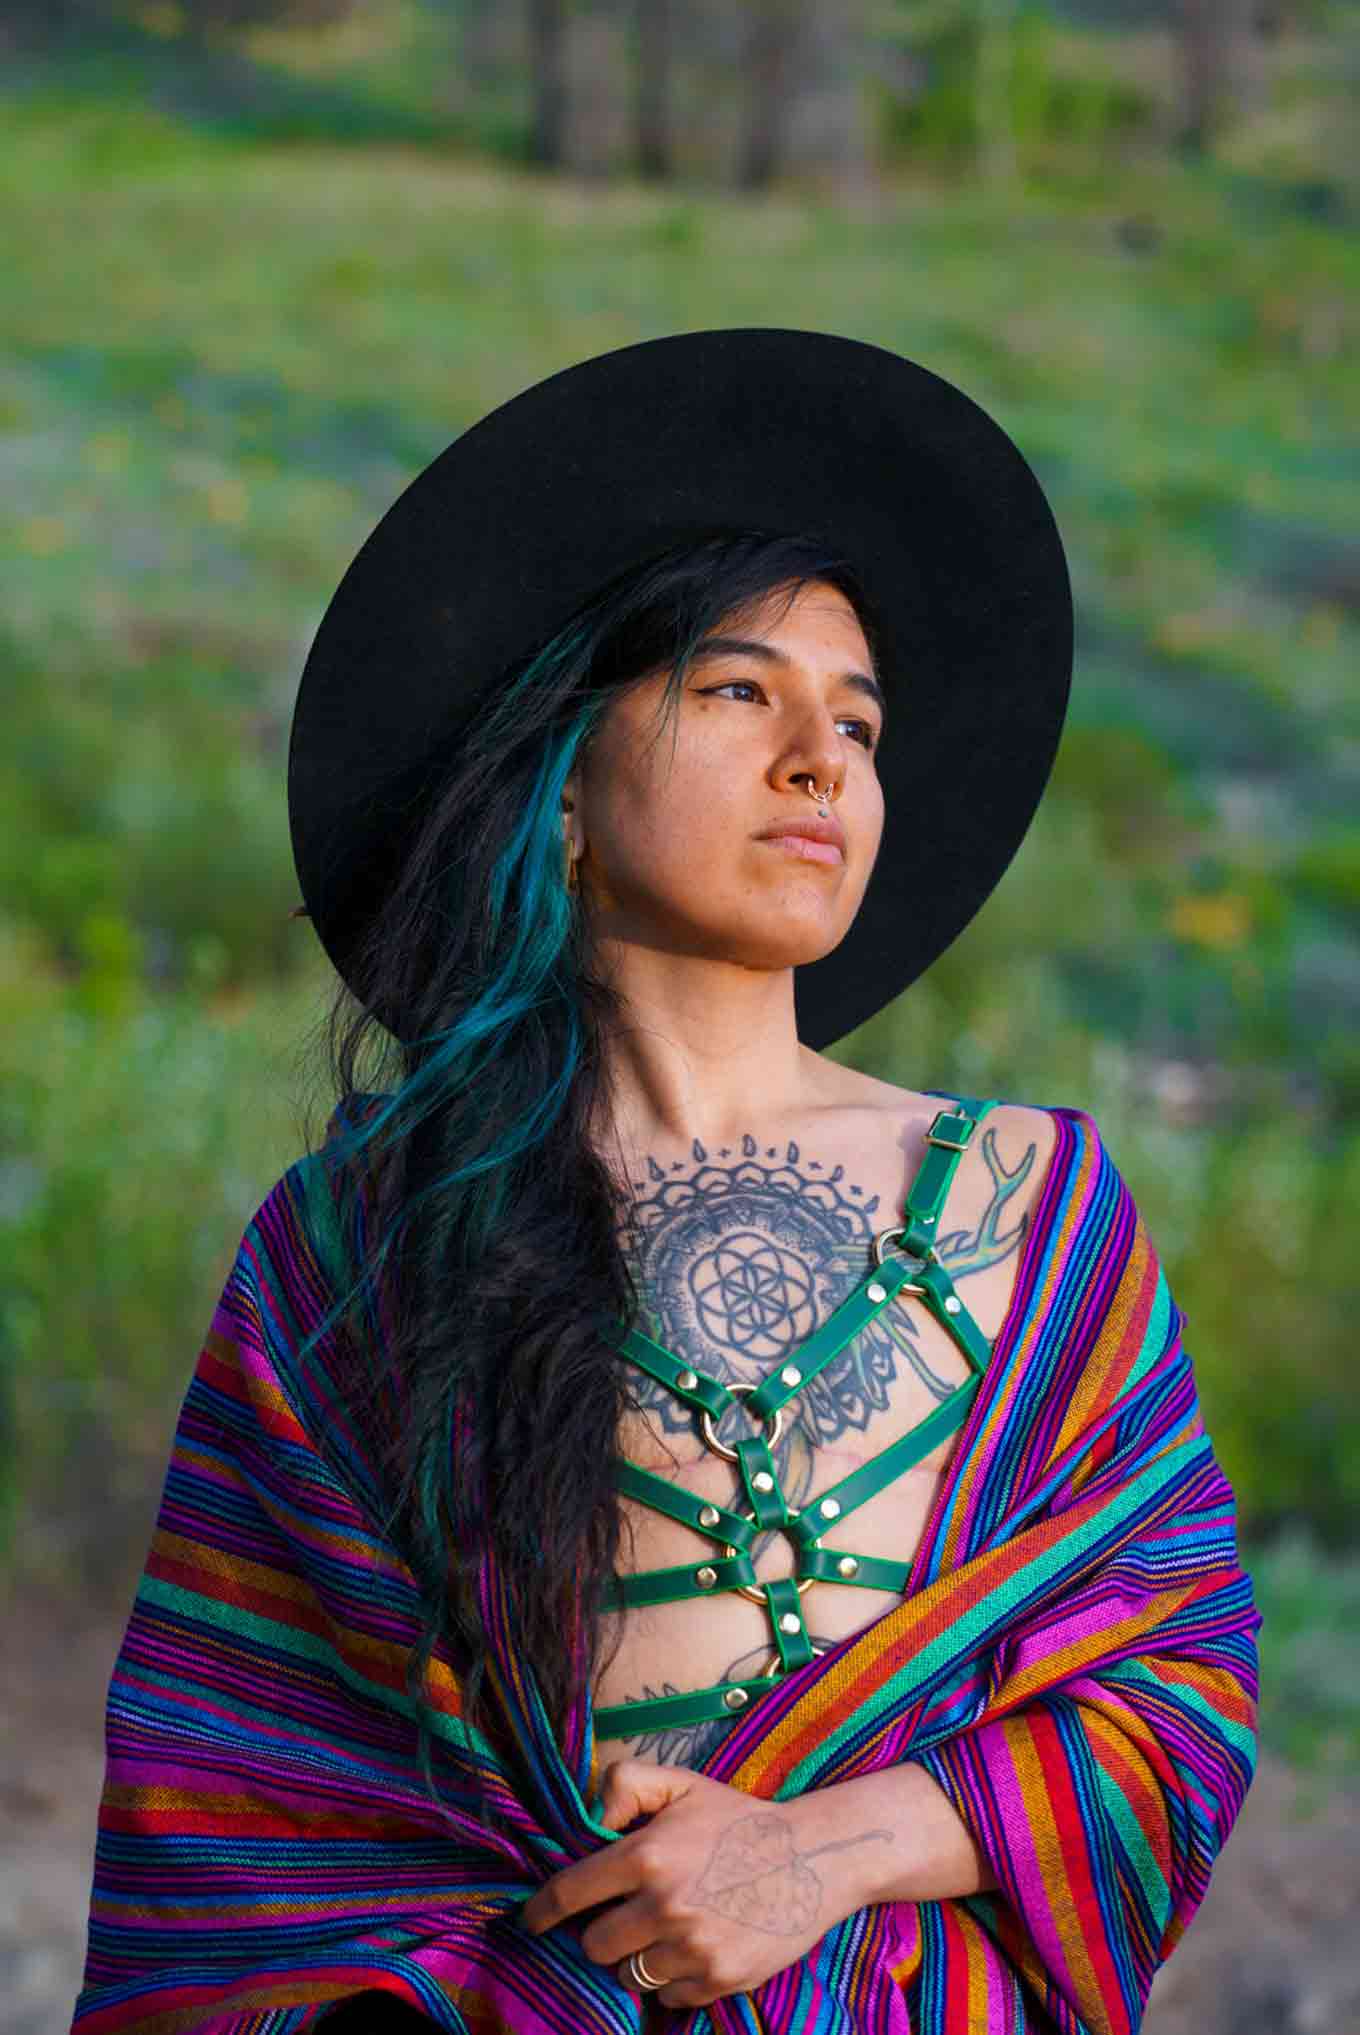 Portret van Pınar Sinopoulos-Lloyd, mede-oprichter van Queer Nature. Ze dragen een zwarte hoed, kleurrijke sjaal met een peinzende uitdrukking.